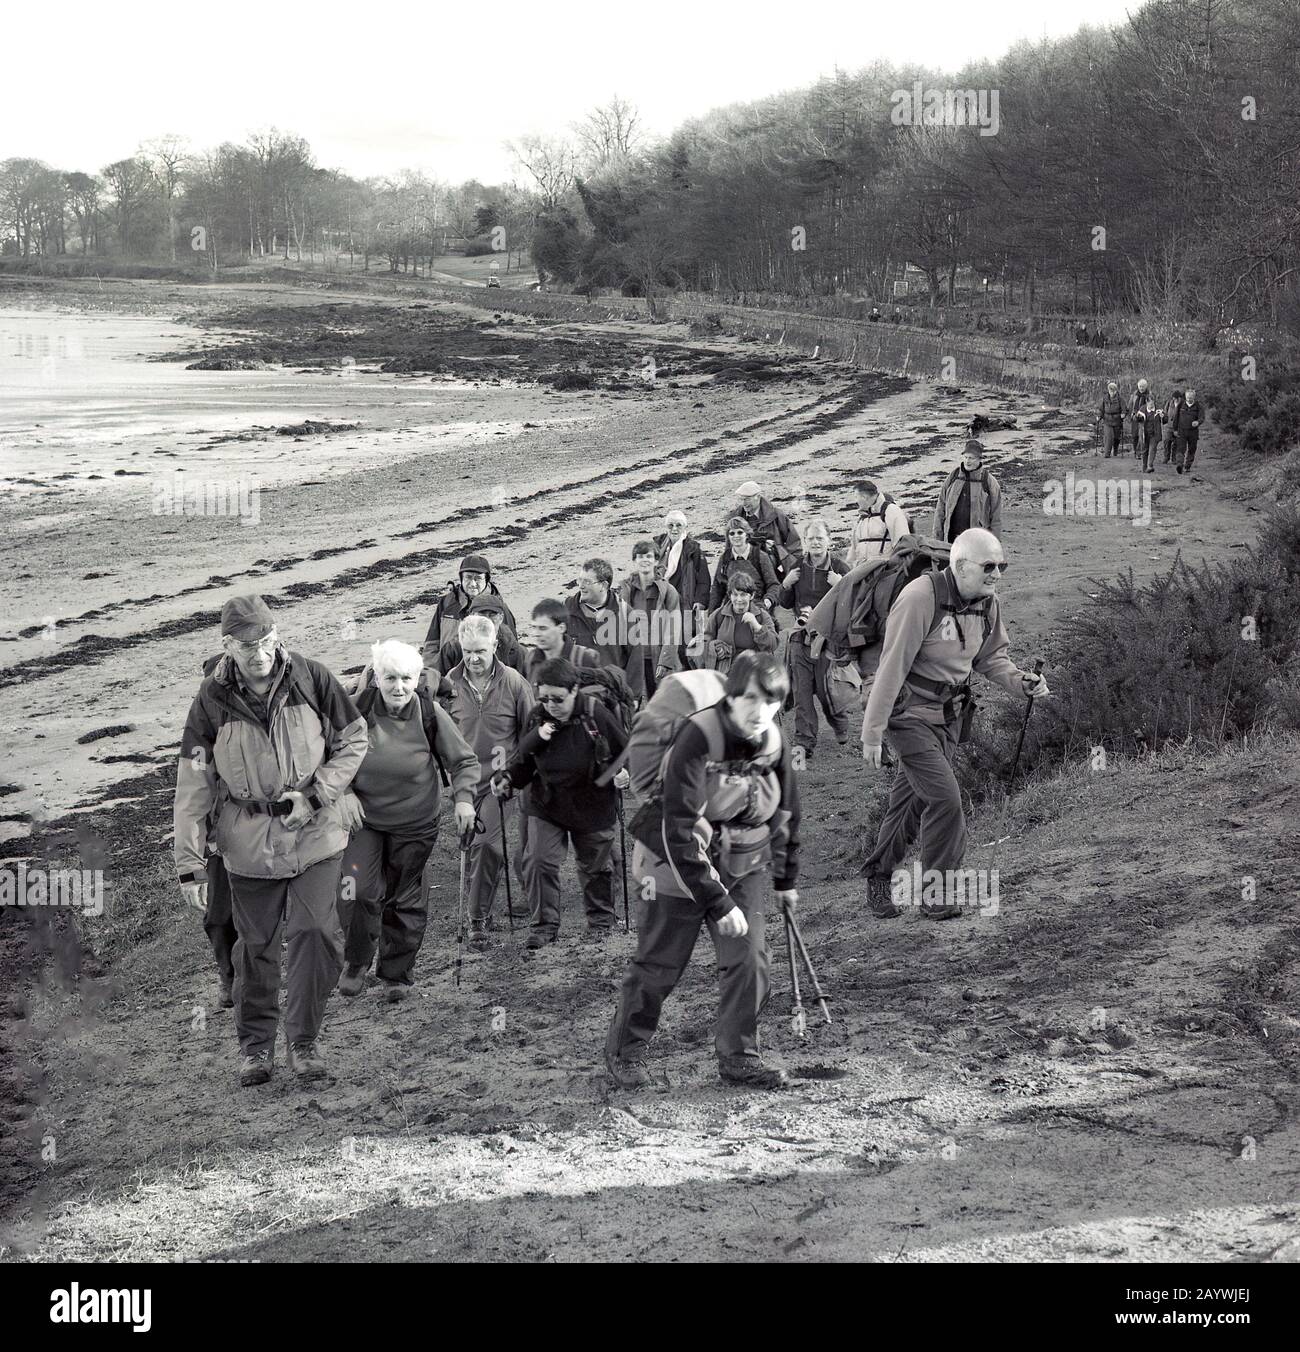 1980er Jahre, eine Gruppe von erwachsenen Wanderern oder Wanderern in Schutzkleidung im Freien, die an der Bucht des Flusses Entlang der Forth Bridge, Stirling, Schottland, spazieren gehen. Stockfoto